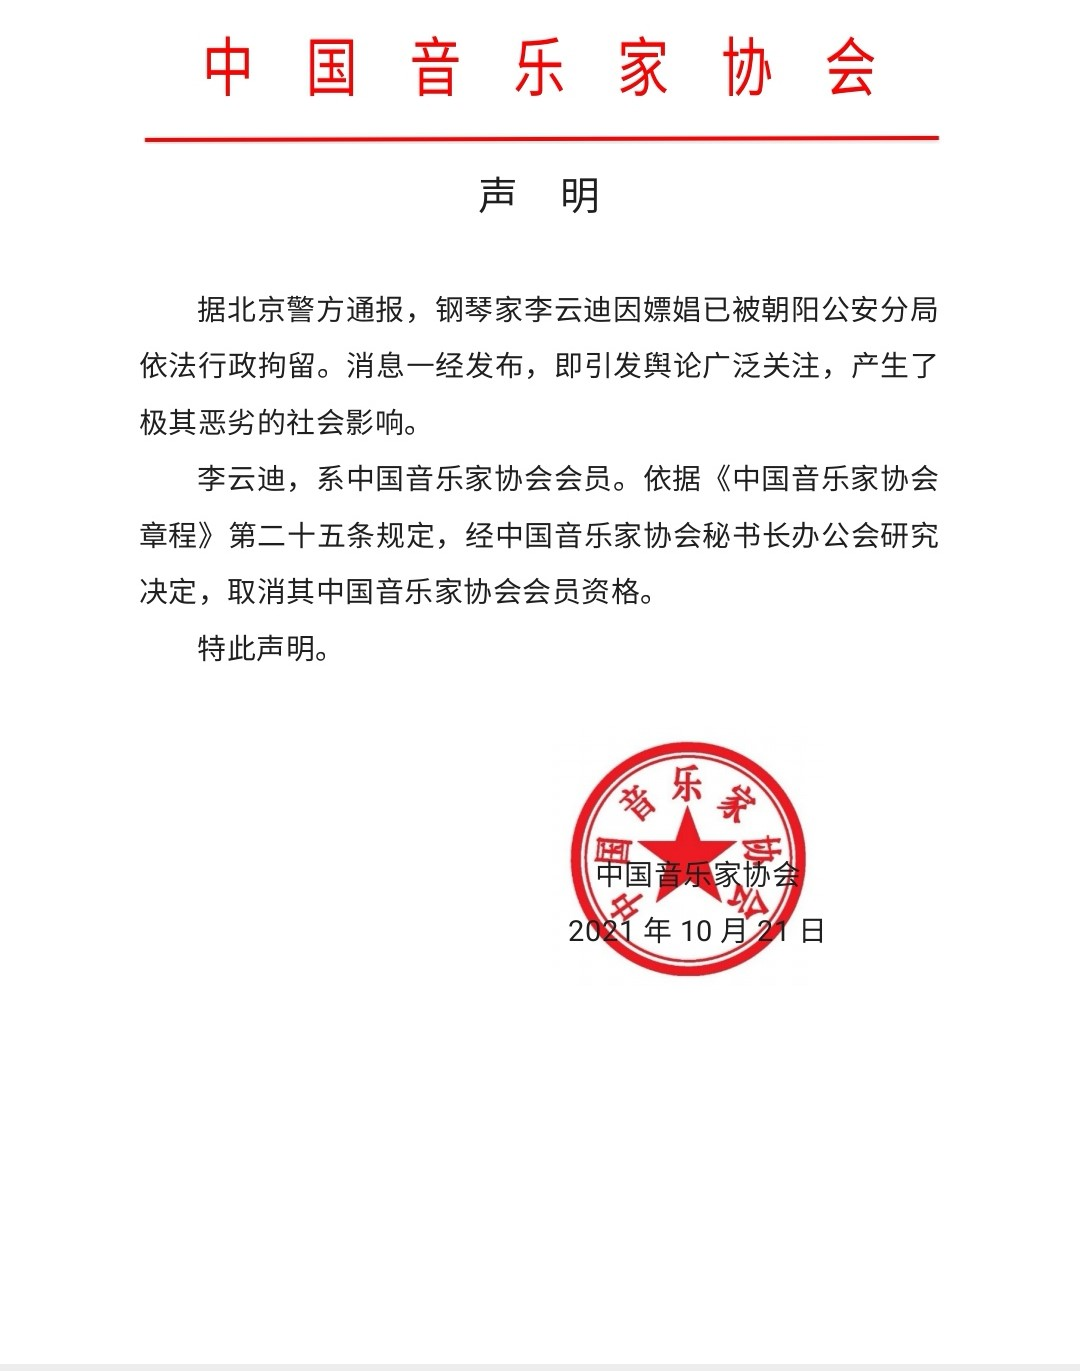 中国音乐家协会发布声明取消会员资格（社会影响极其恶劣）